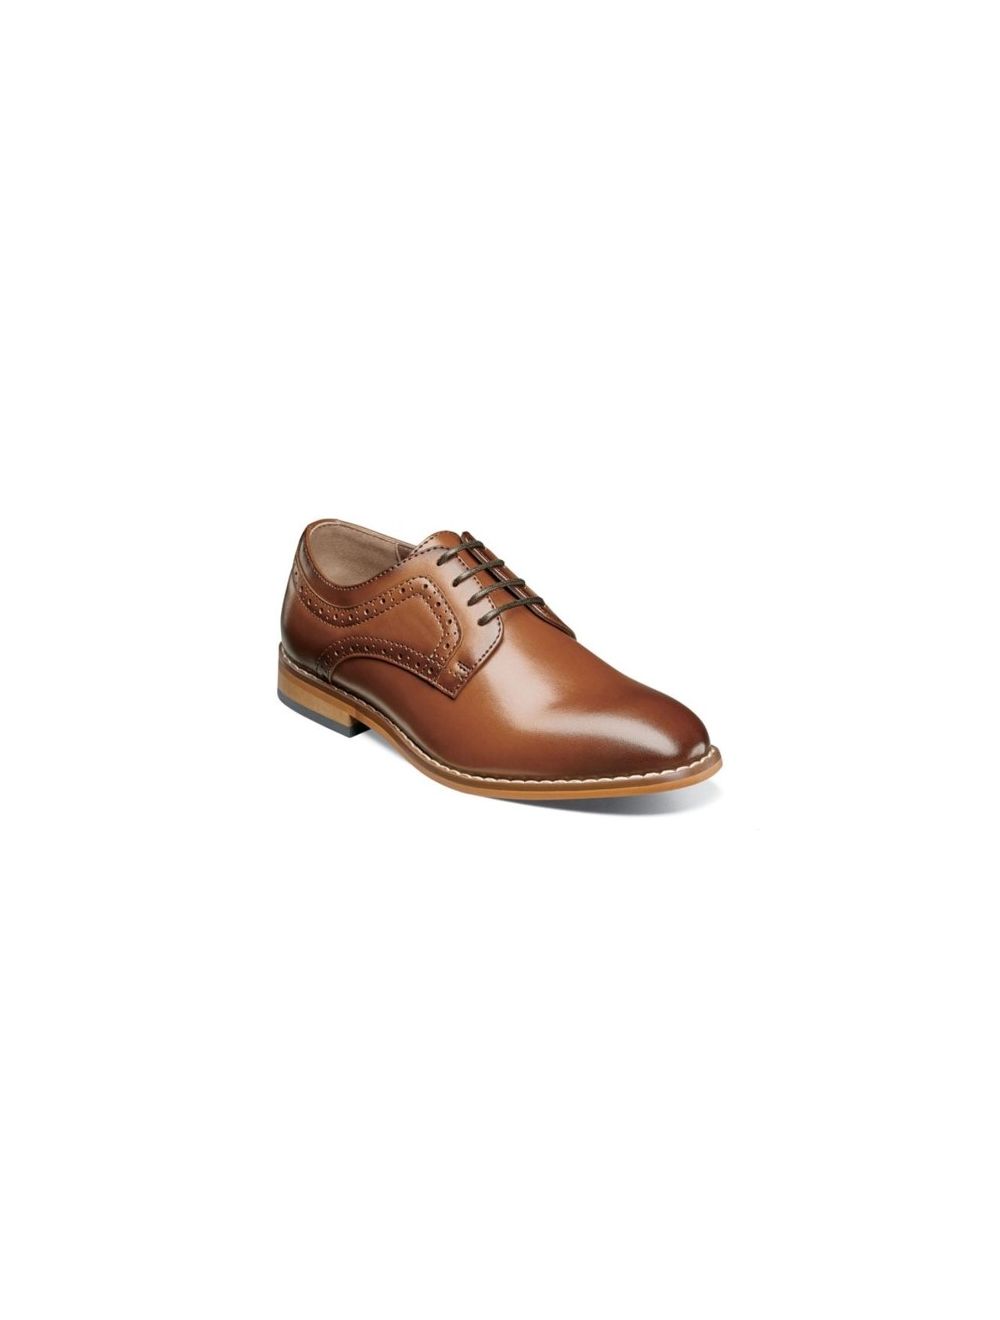 Stacy Adams Men's Shoes Dickens Plain Toe Oxford Cognac 25231-221 